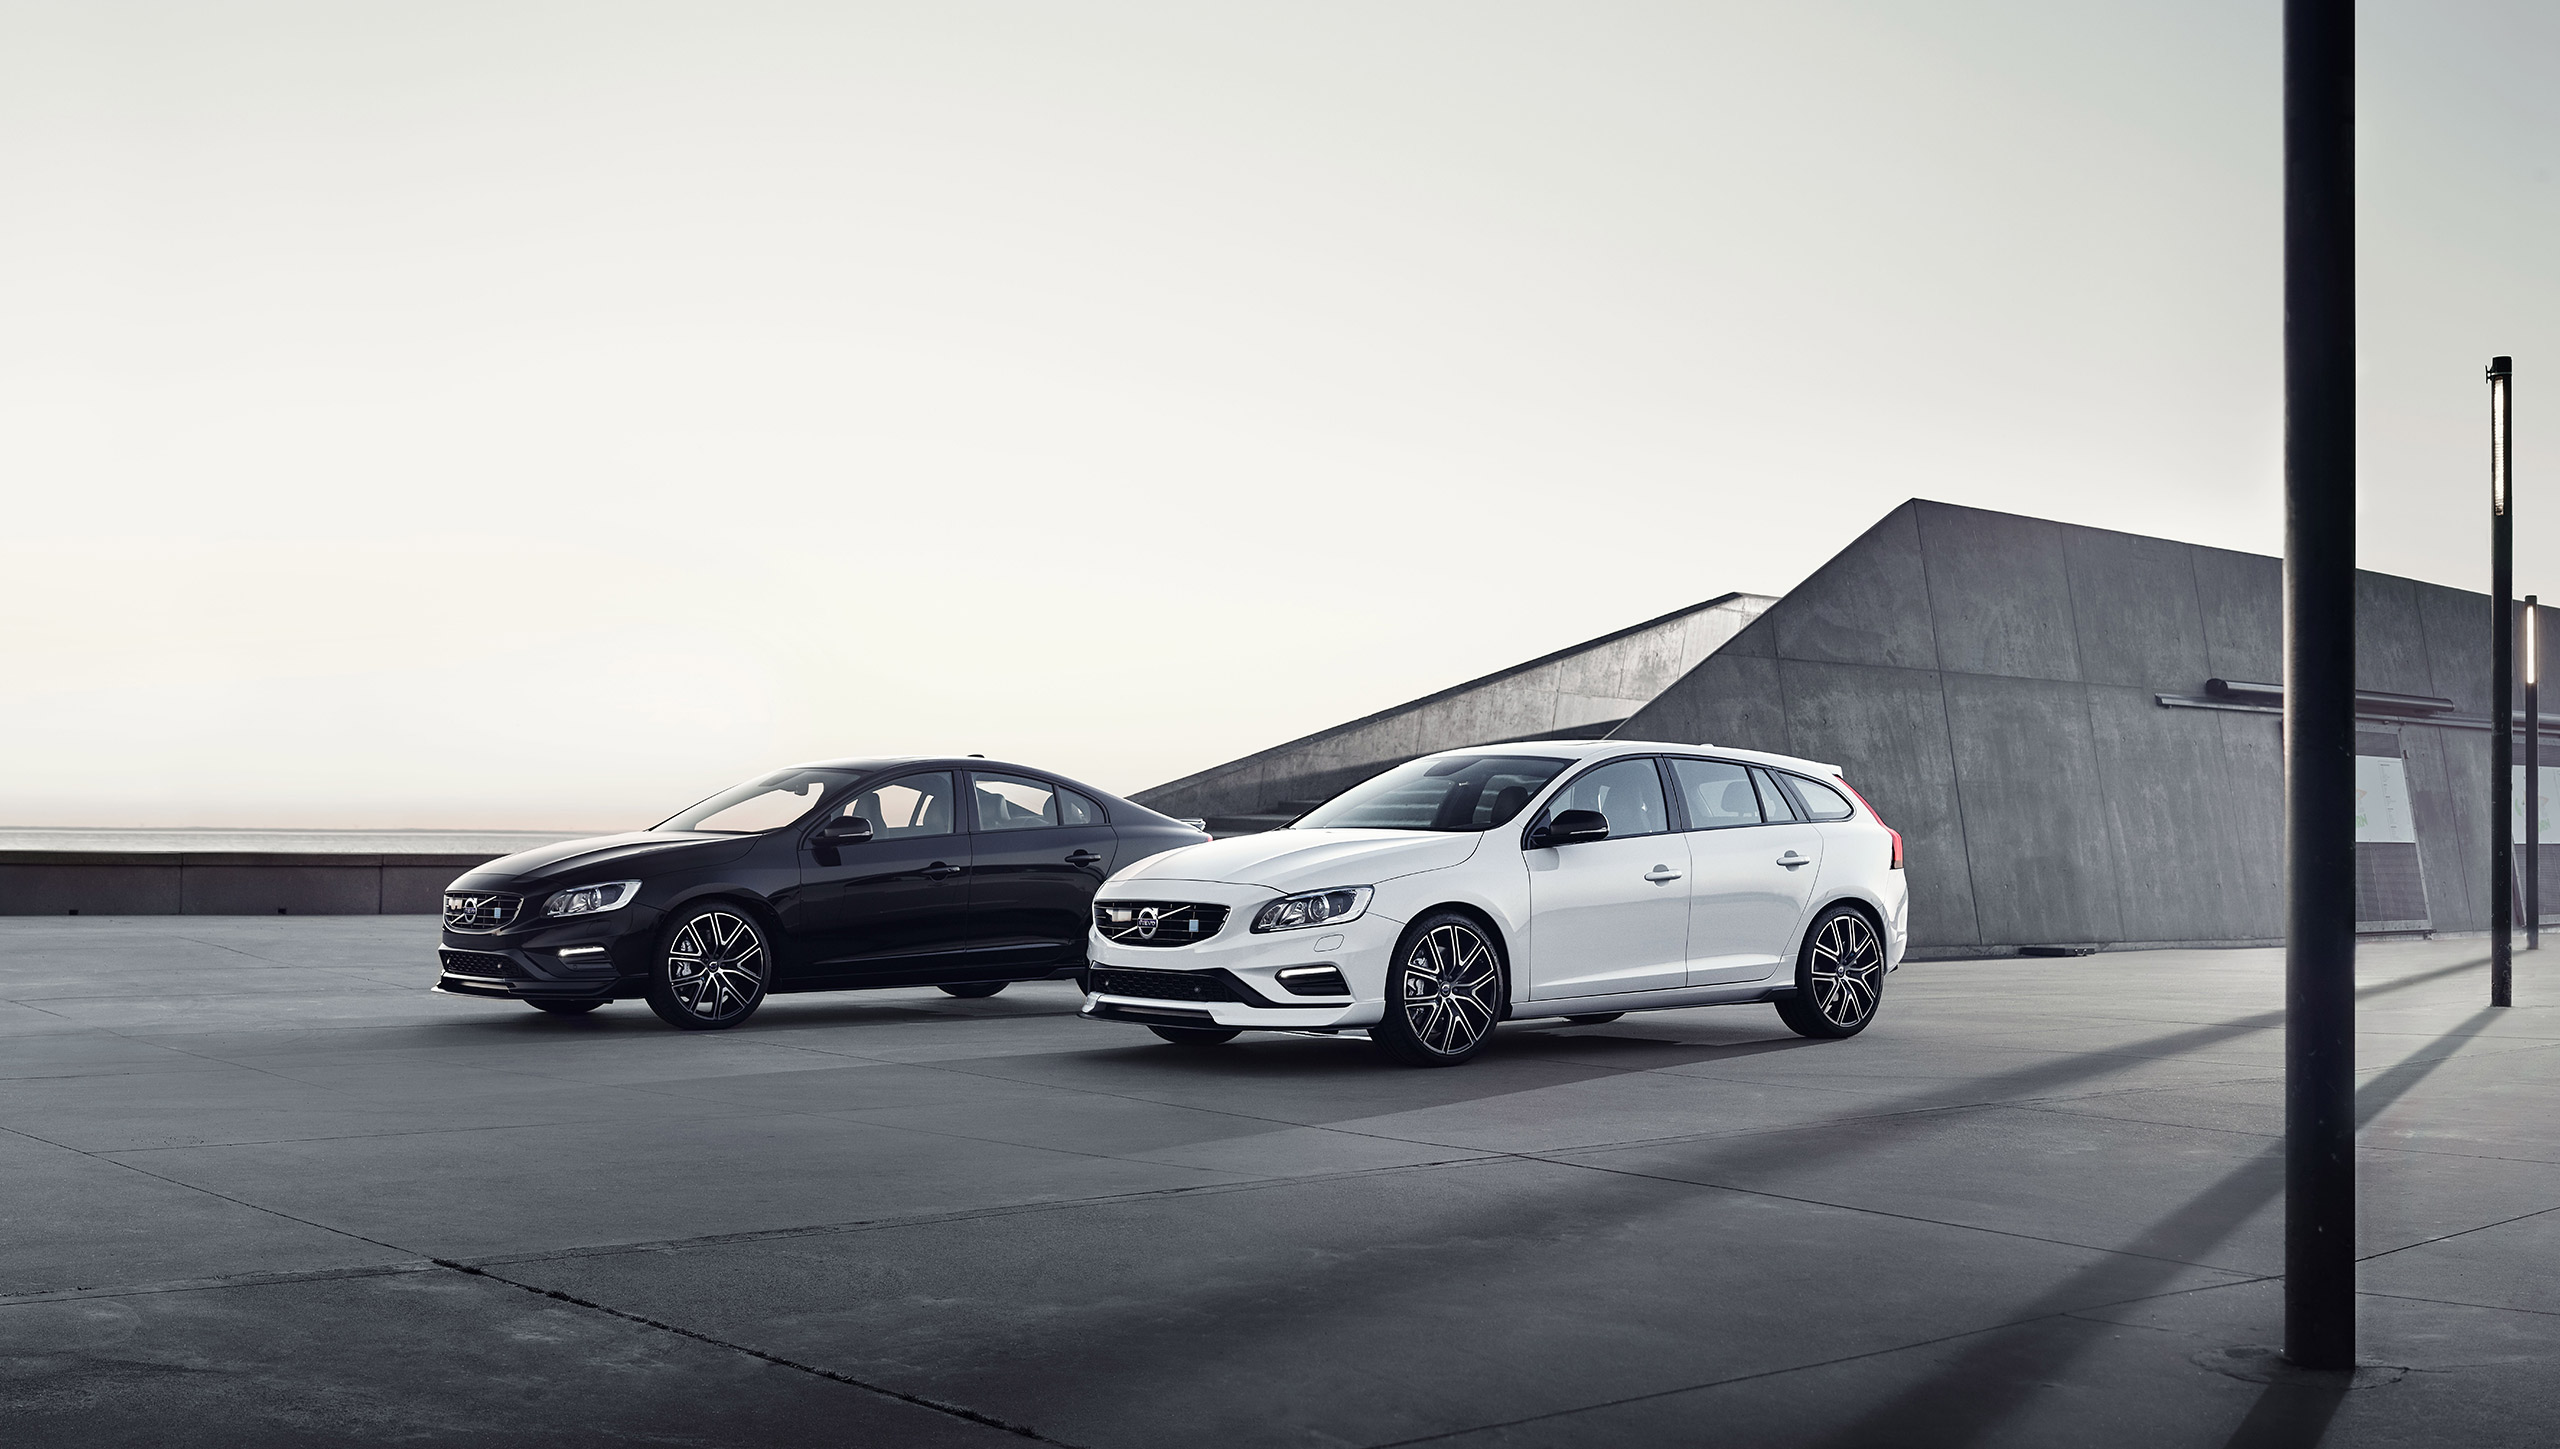 Musta Volvo S60 ja valkoinen Volvo V60 parkissa tasanteella, takana geometrinen betonirakennus.